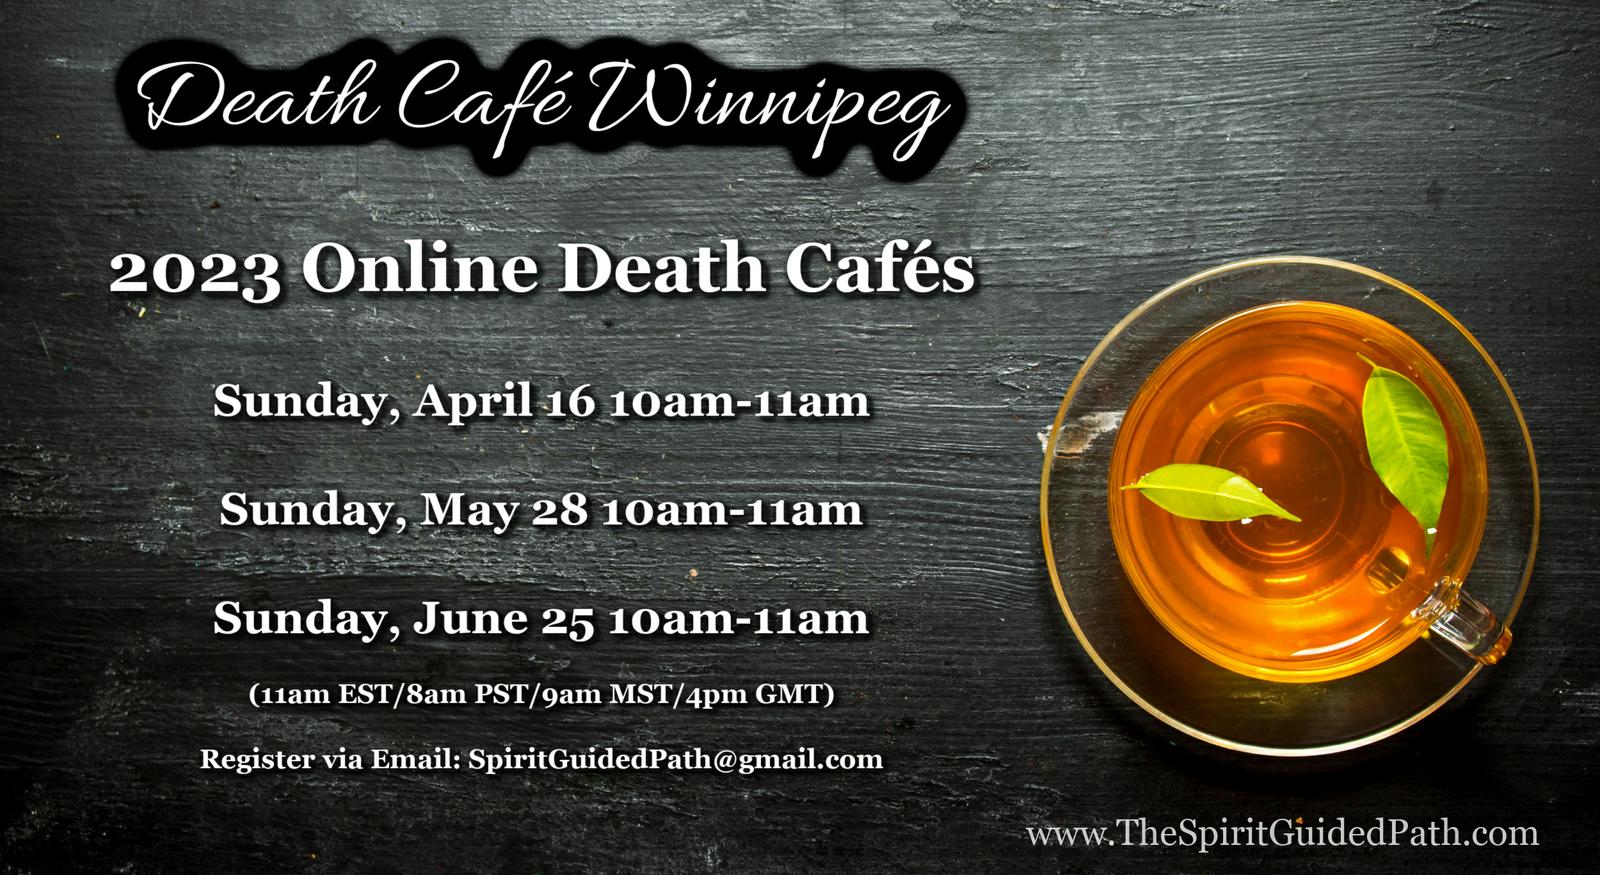 June Online Death Cafe CDT